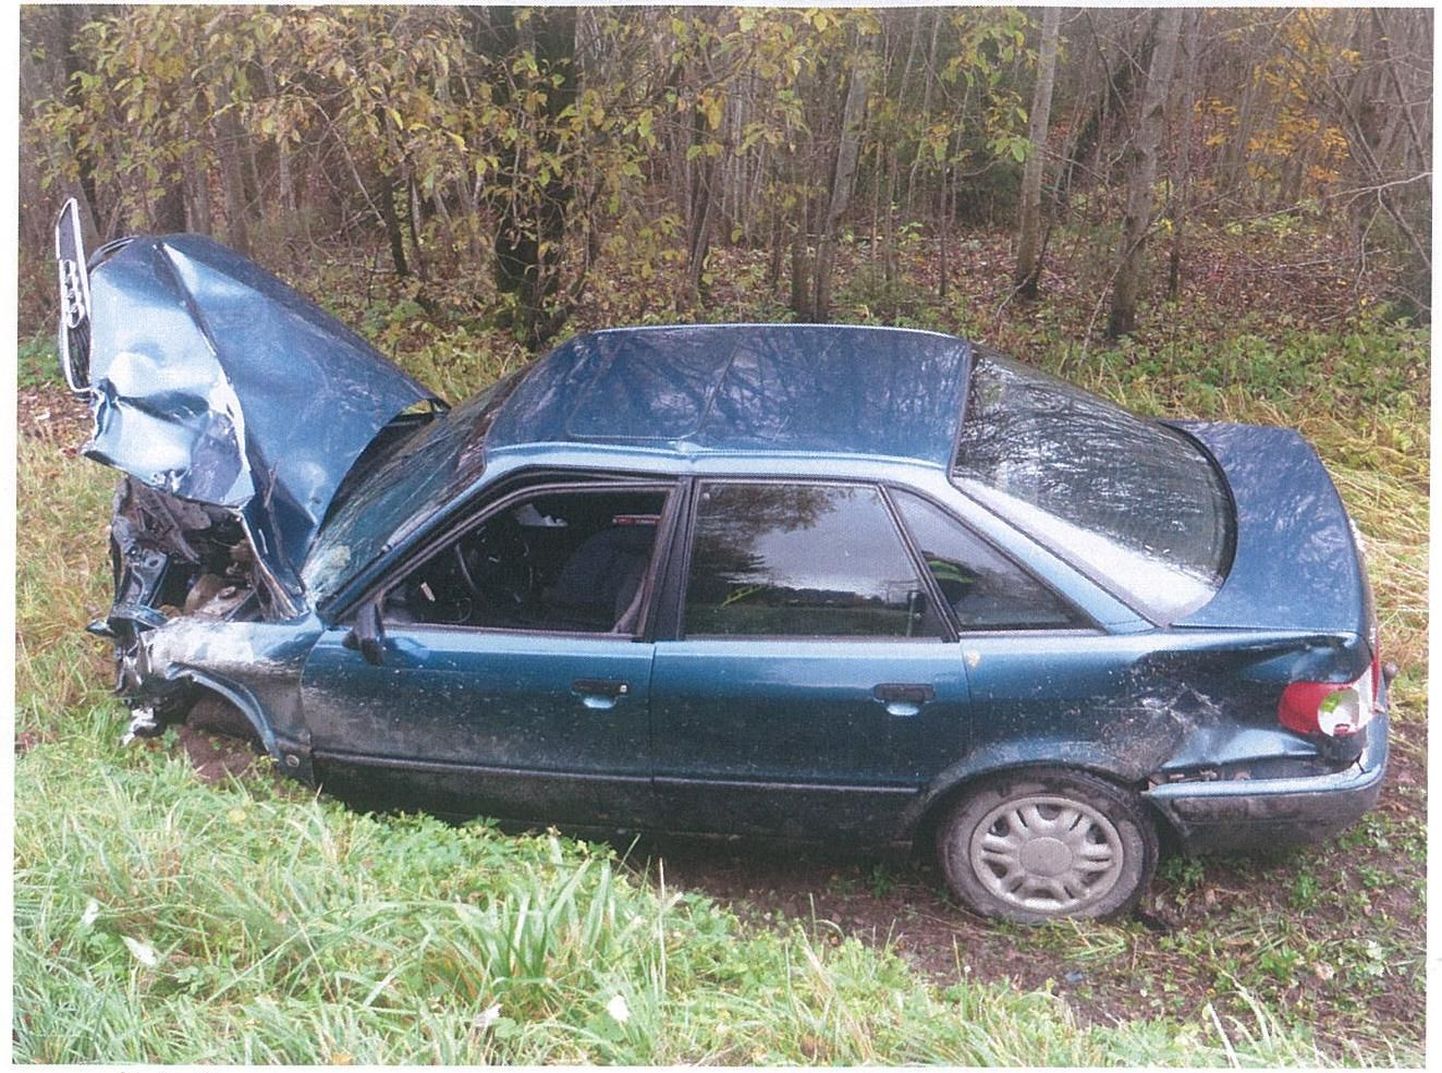 Liiklusõnnetus Valgamaal Otepää vallas Tatra-Otepää-Sangaste maantee 33. kilomeetril.